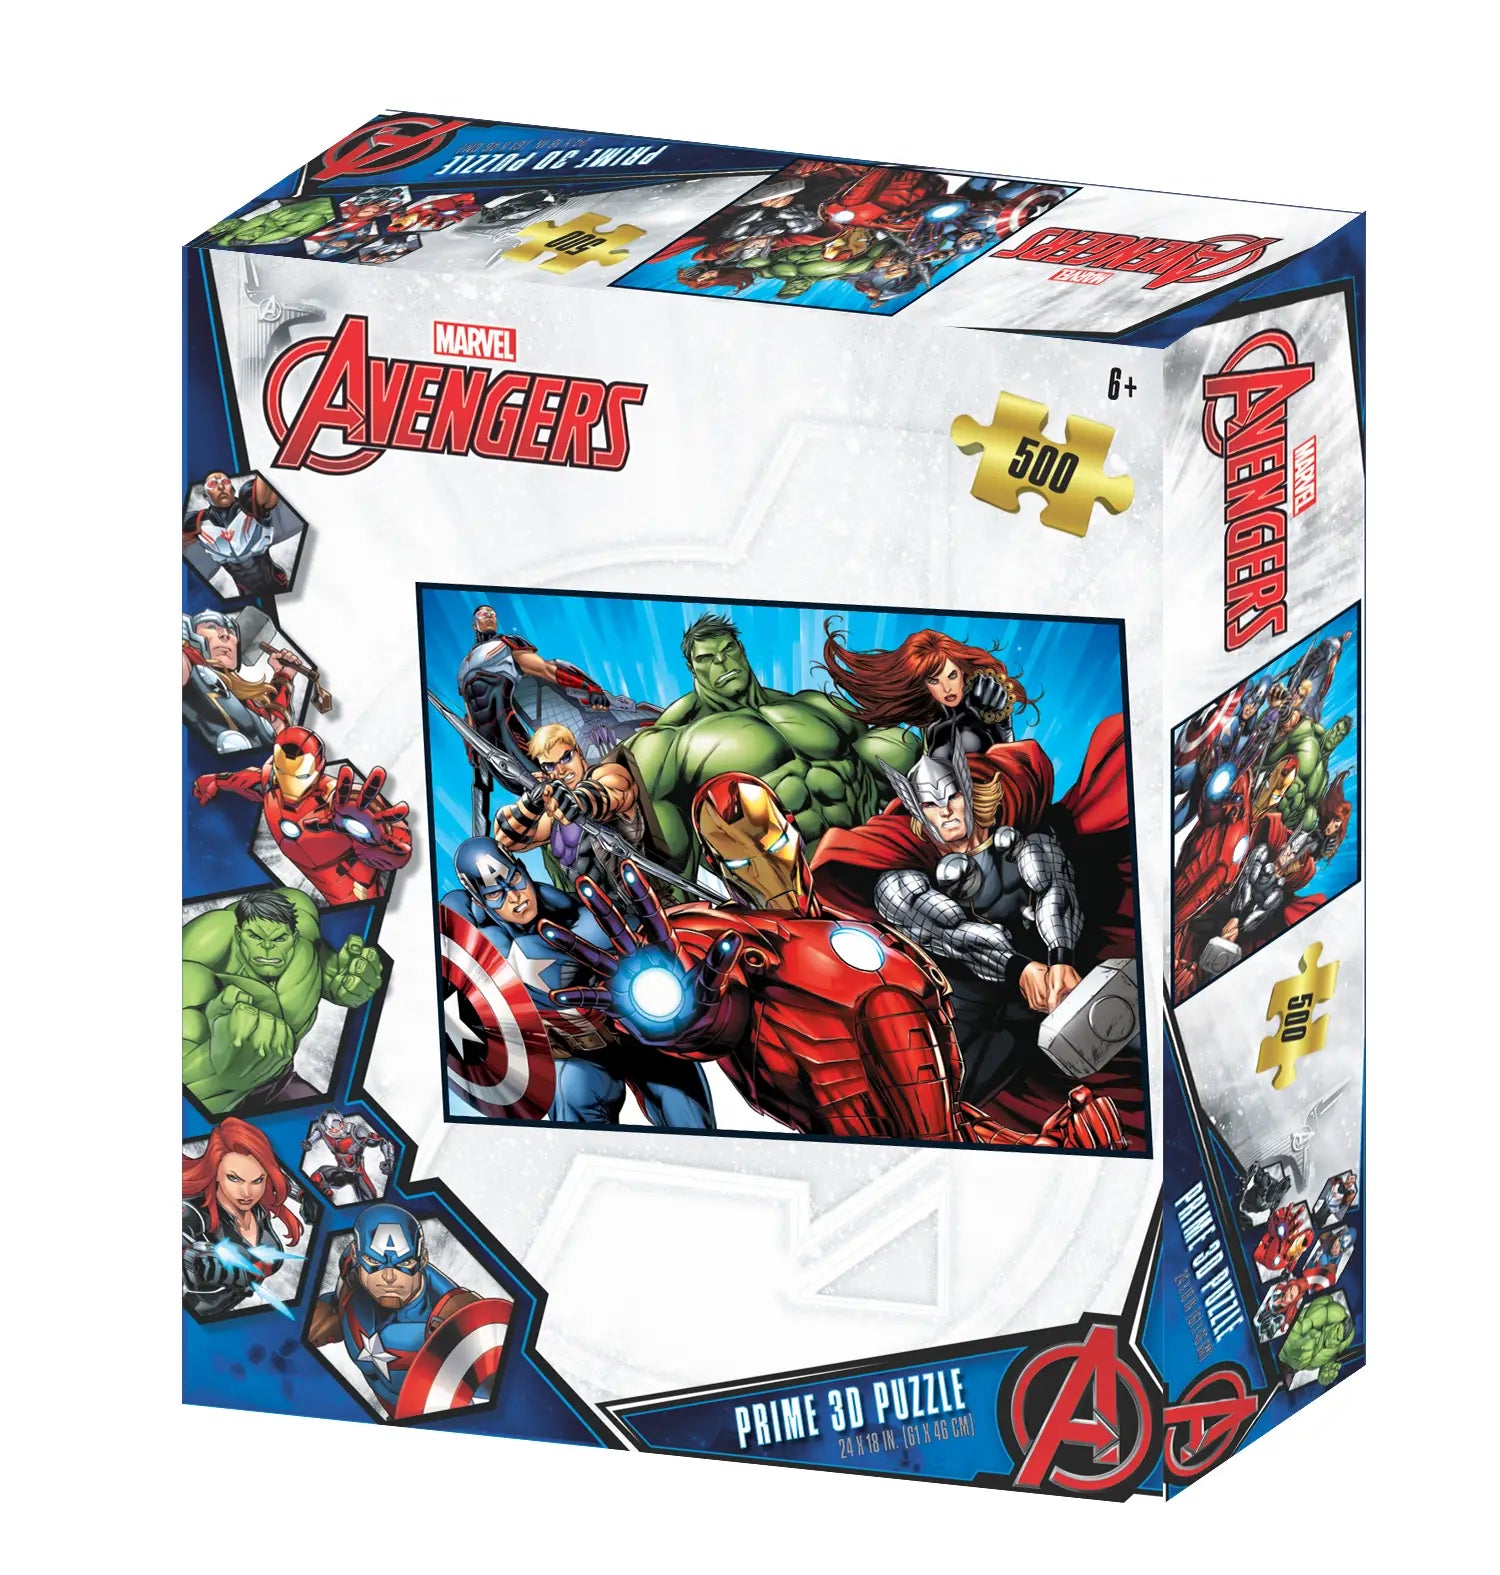 Prime 3D Marvel Avengers 500 Piece Jigsaw Puzzle